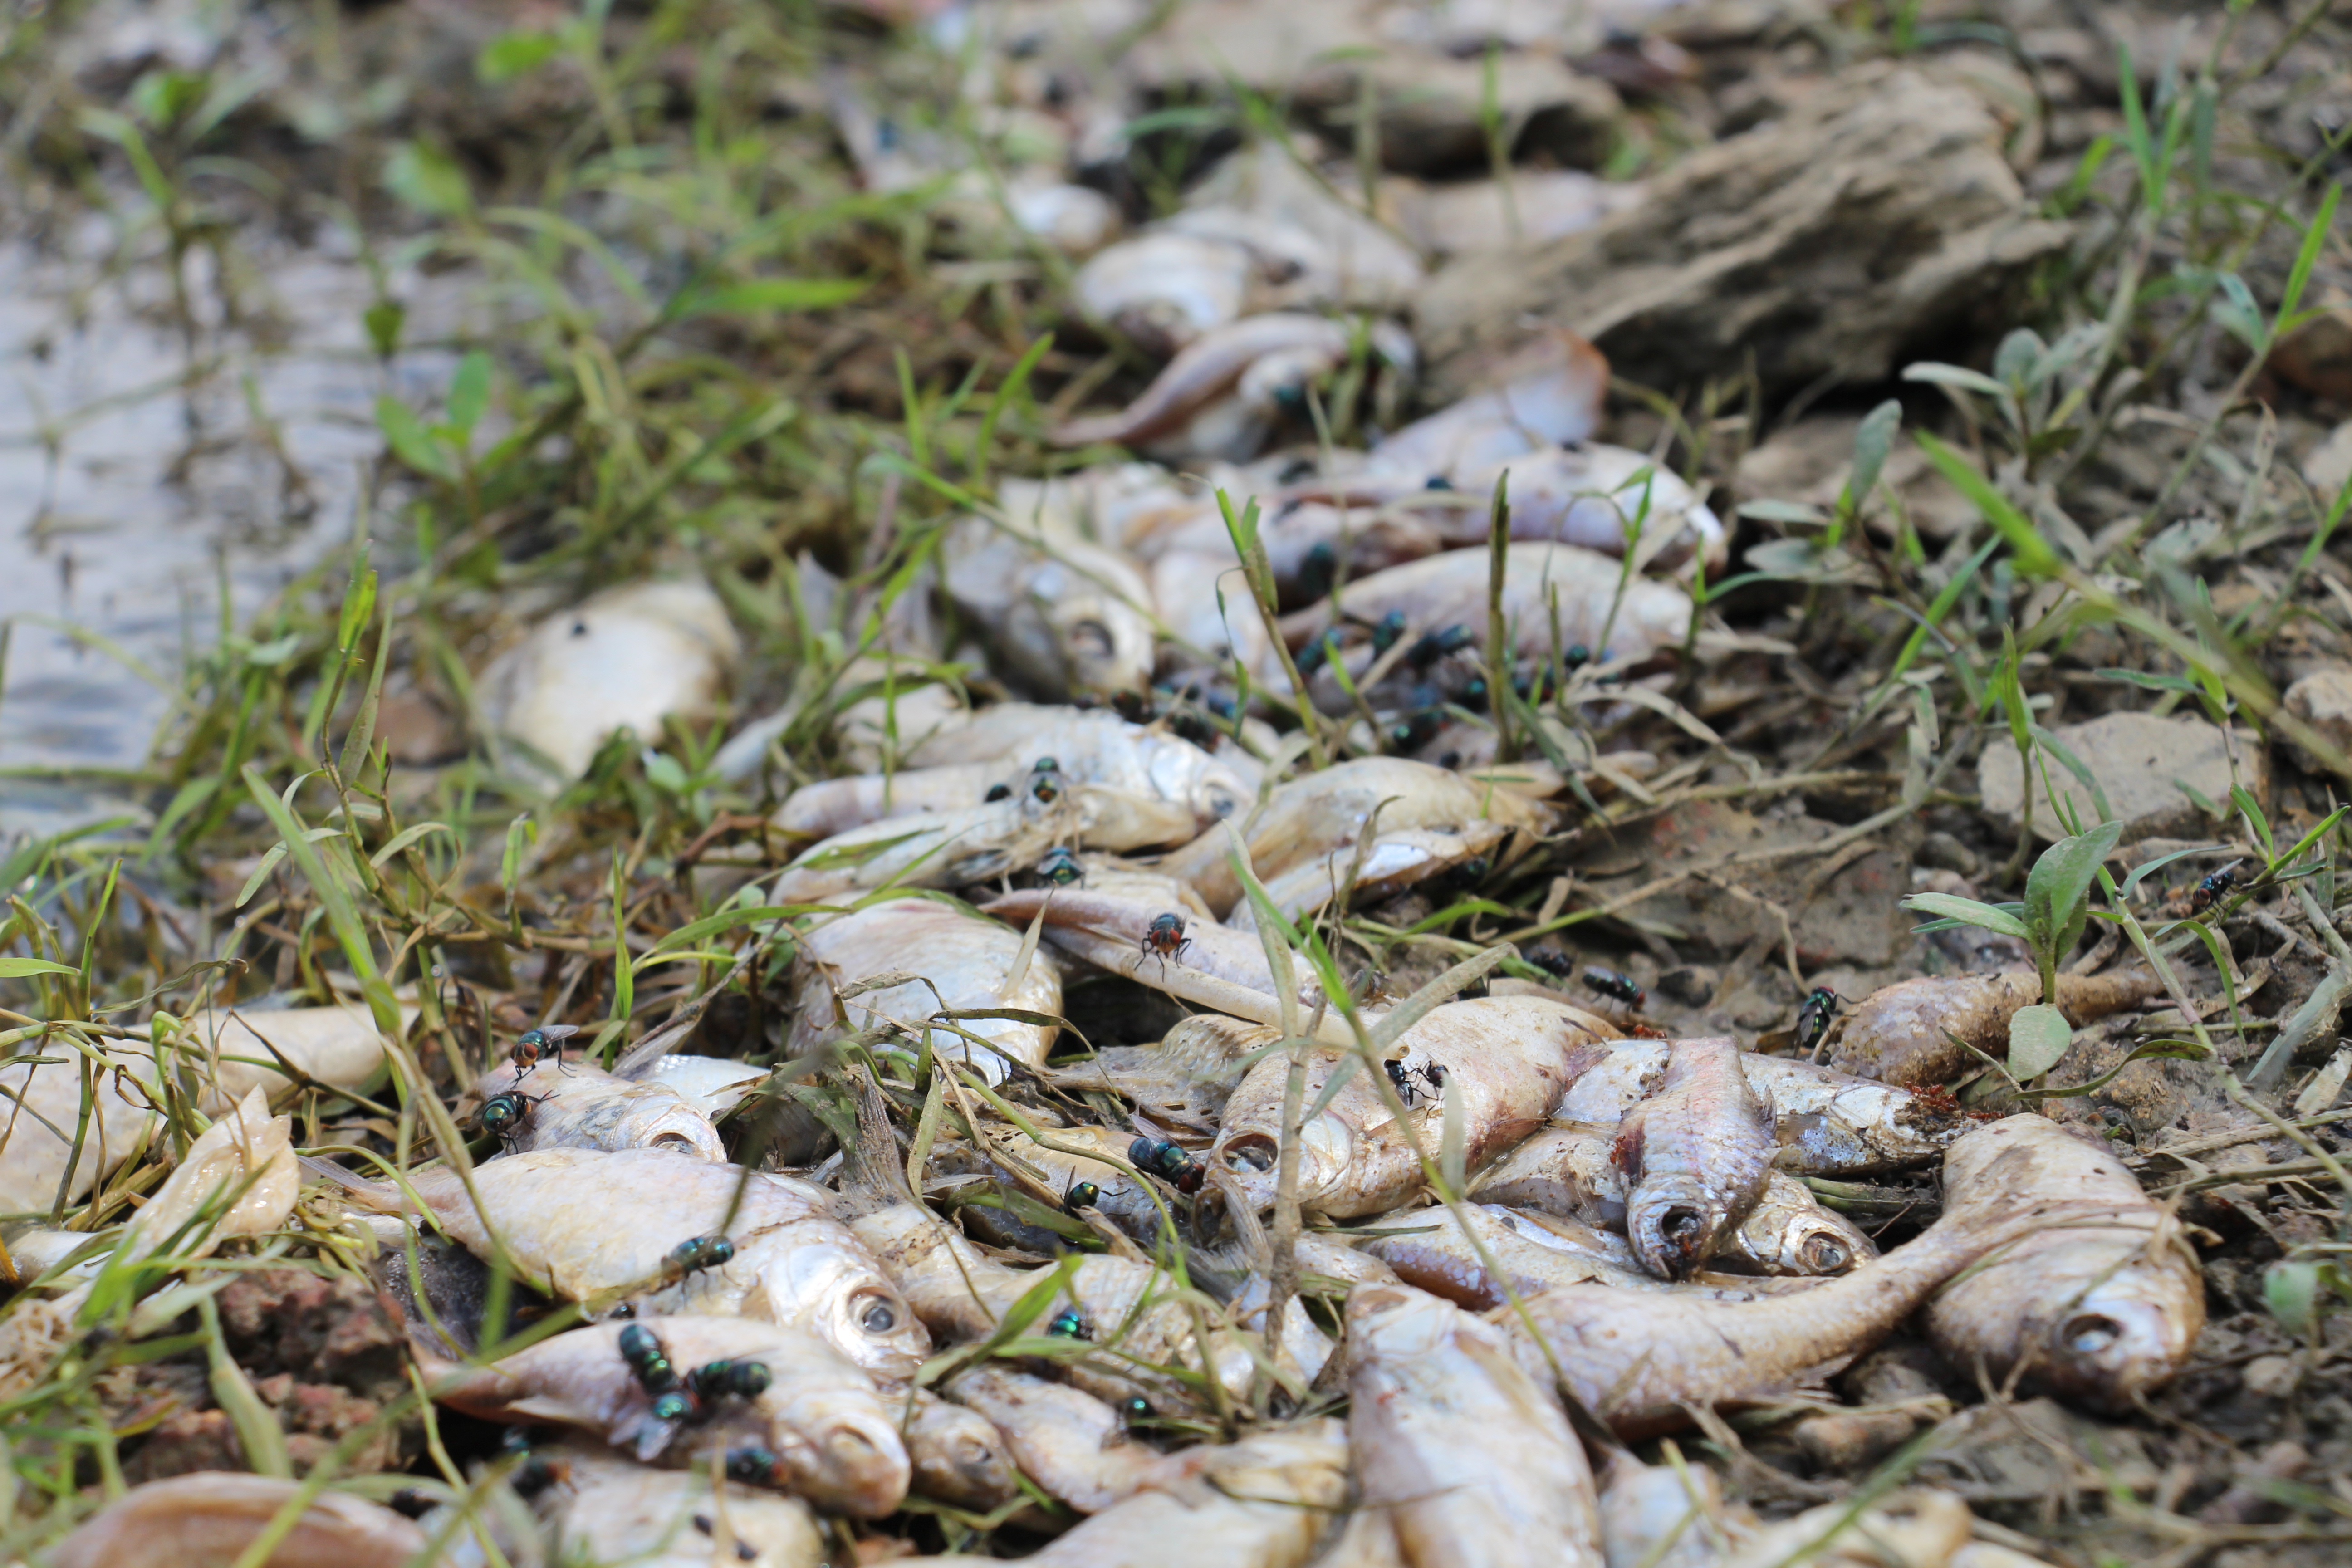 Dead fish wash onto the bank. Photo: Tuoi Tre